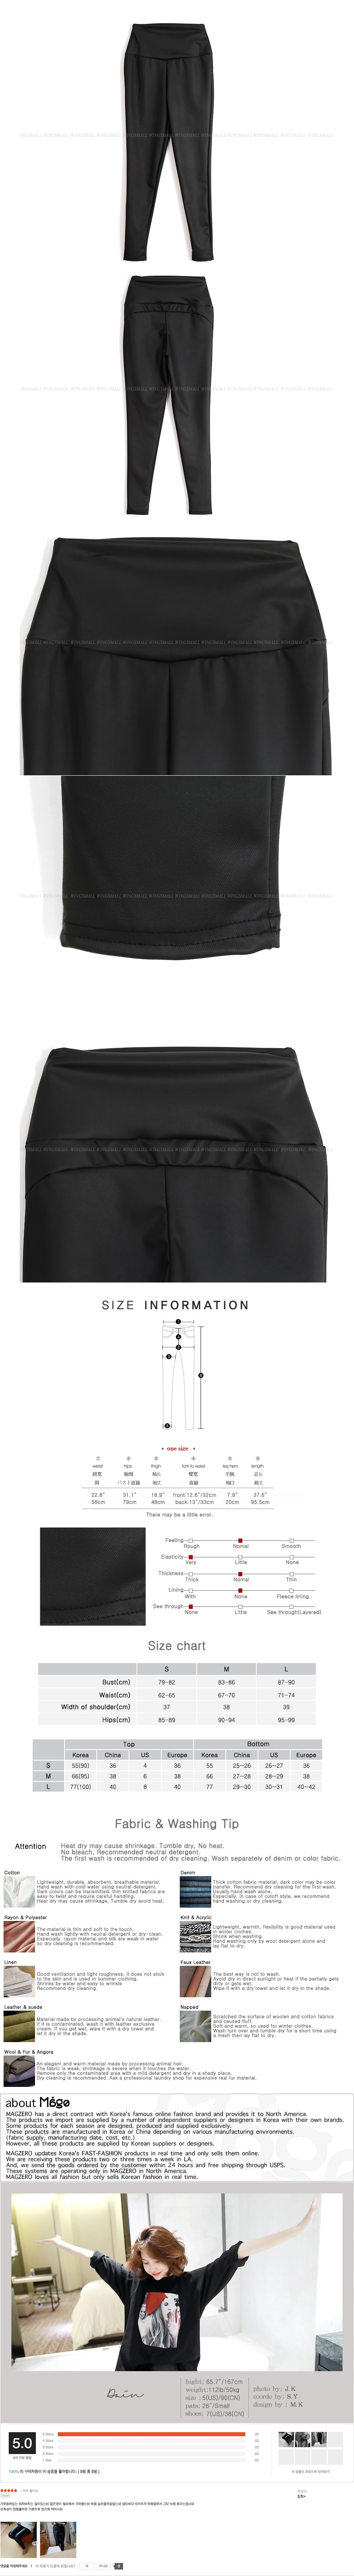 [韩国正品] MAGZERO 高腰人造革紧身裹腿裤 #黑色 One Size(Free) [免费配送]